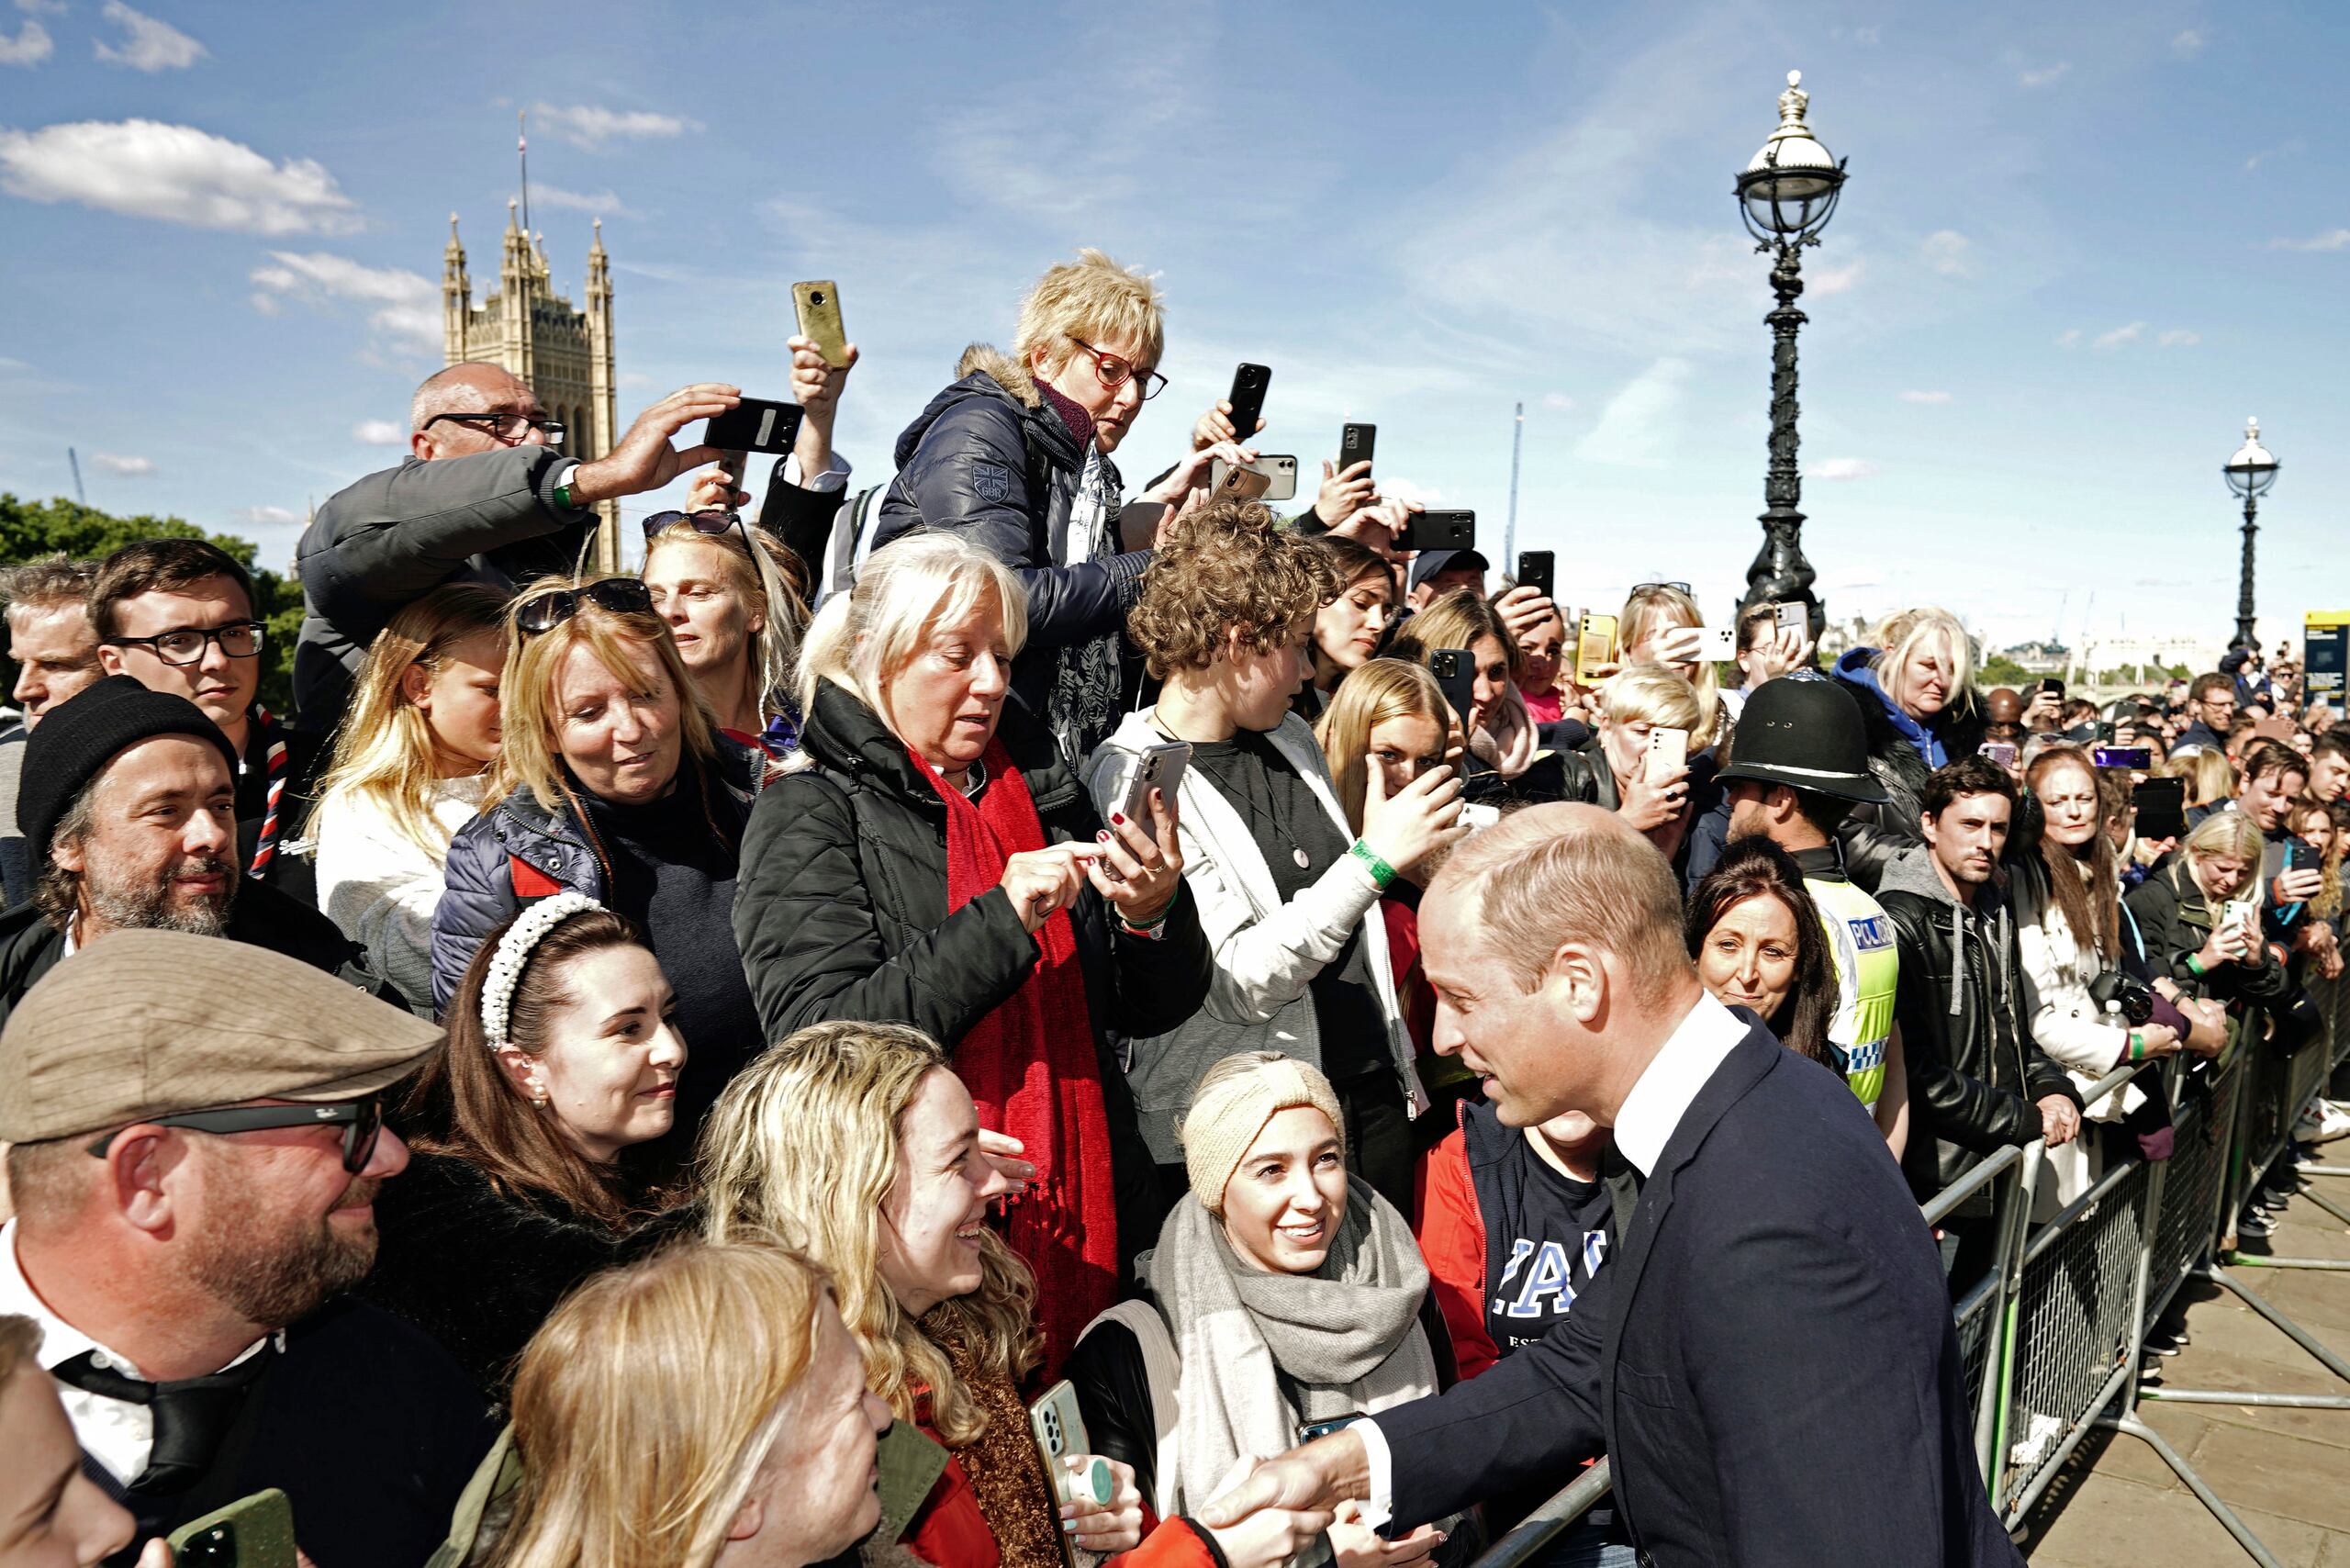 El príncipe Guillermo agradeció a la gente la paciencia de esperar pacientemente en la fila.